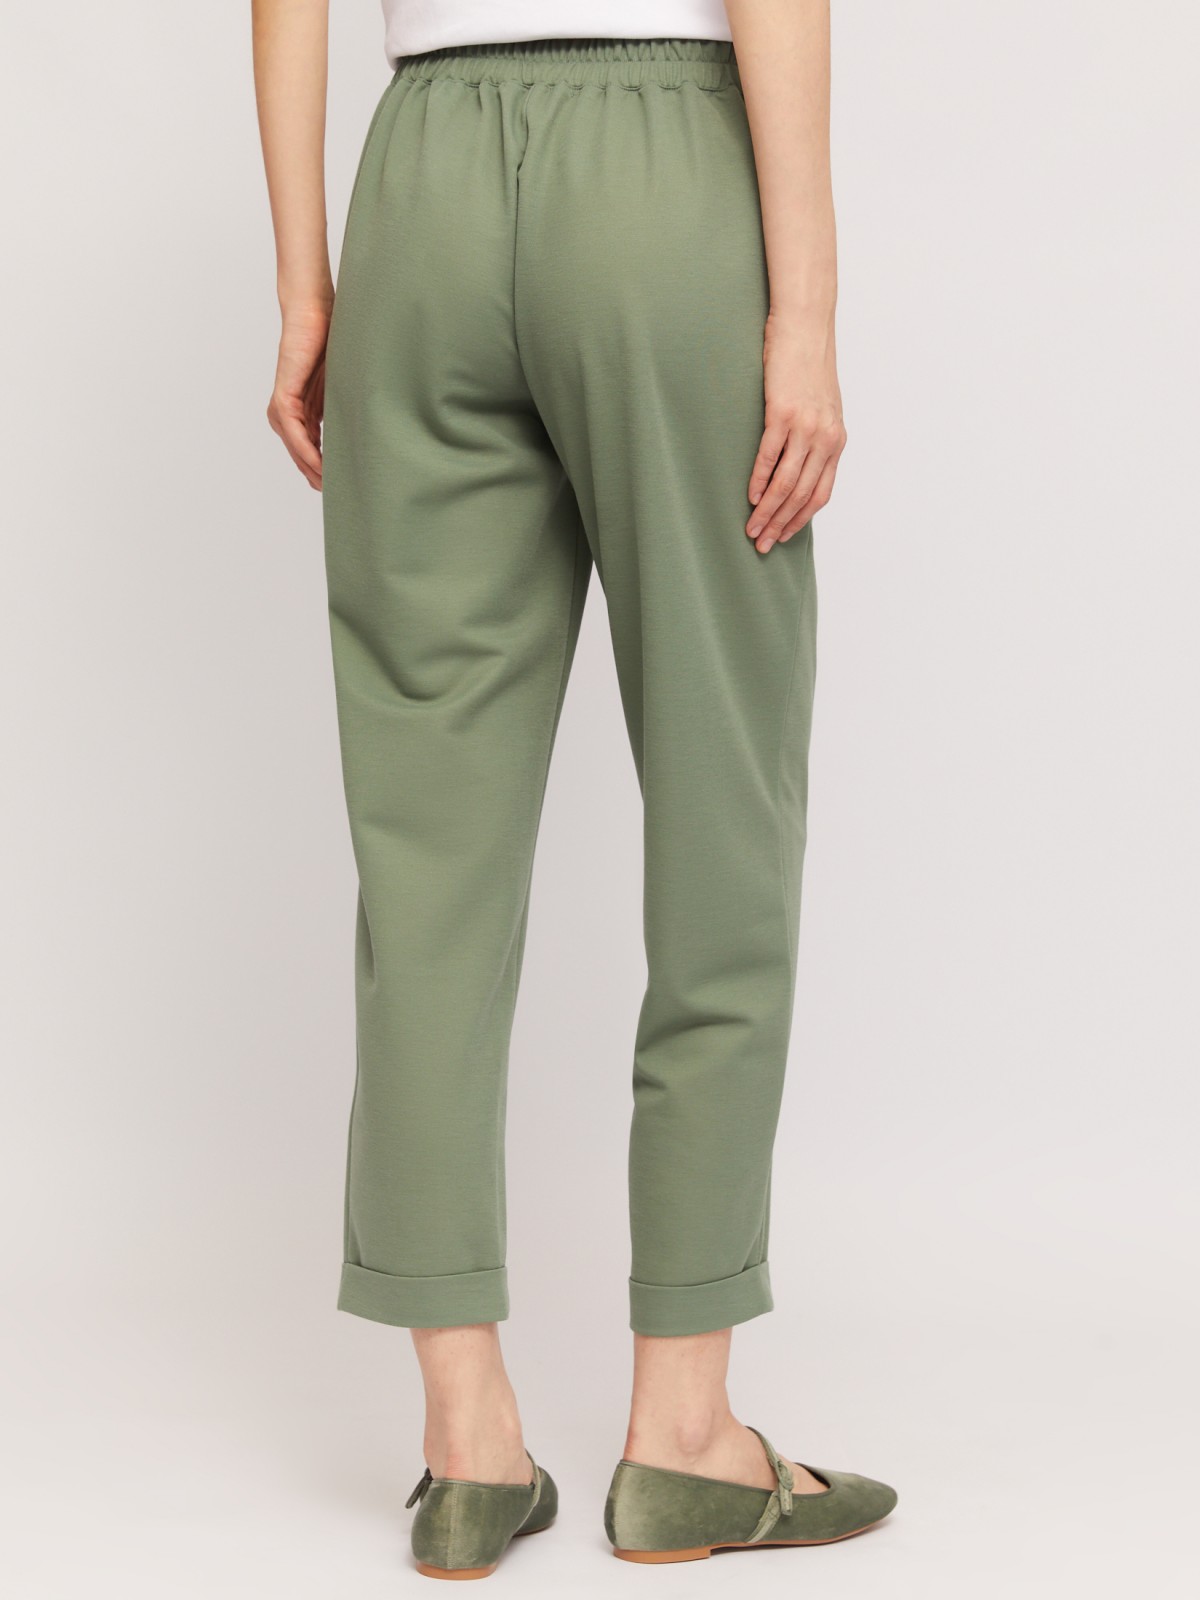 Трикотажные брюки-джоггеры на резинке zolla 02424739Y012, цвет темно-зеленый, размер XS - фото 5